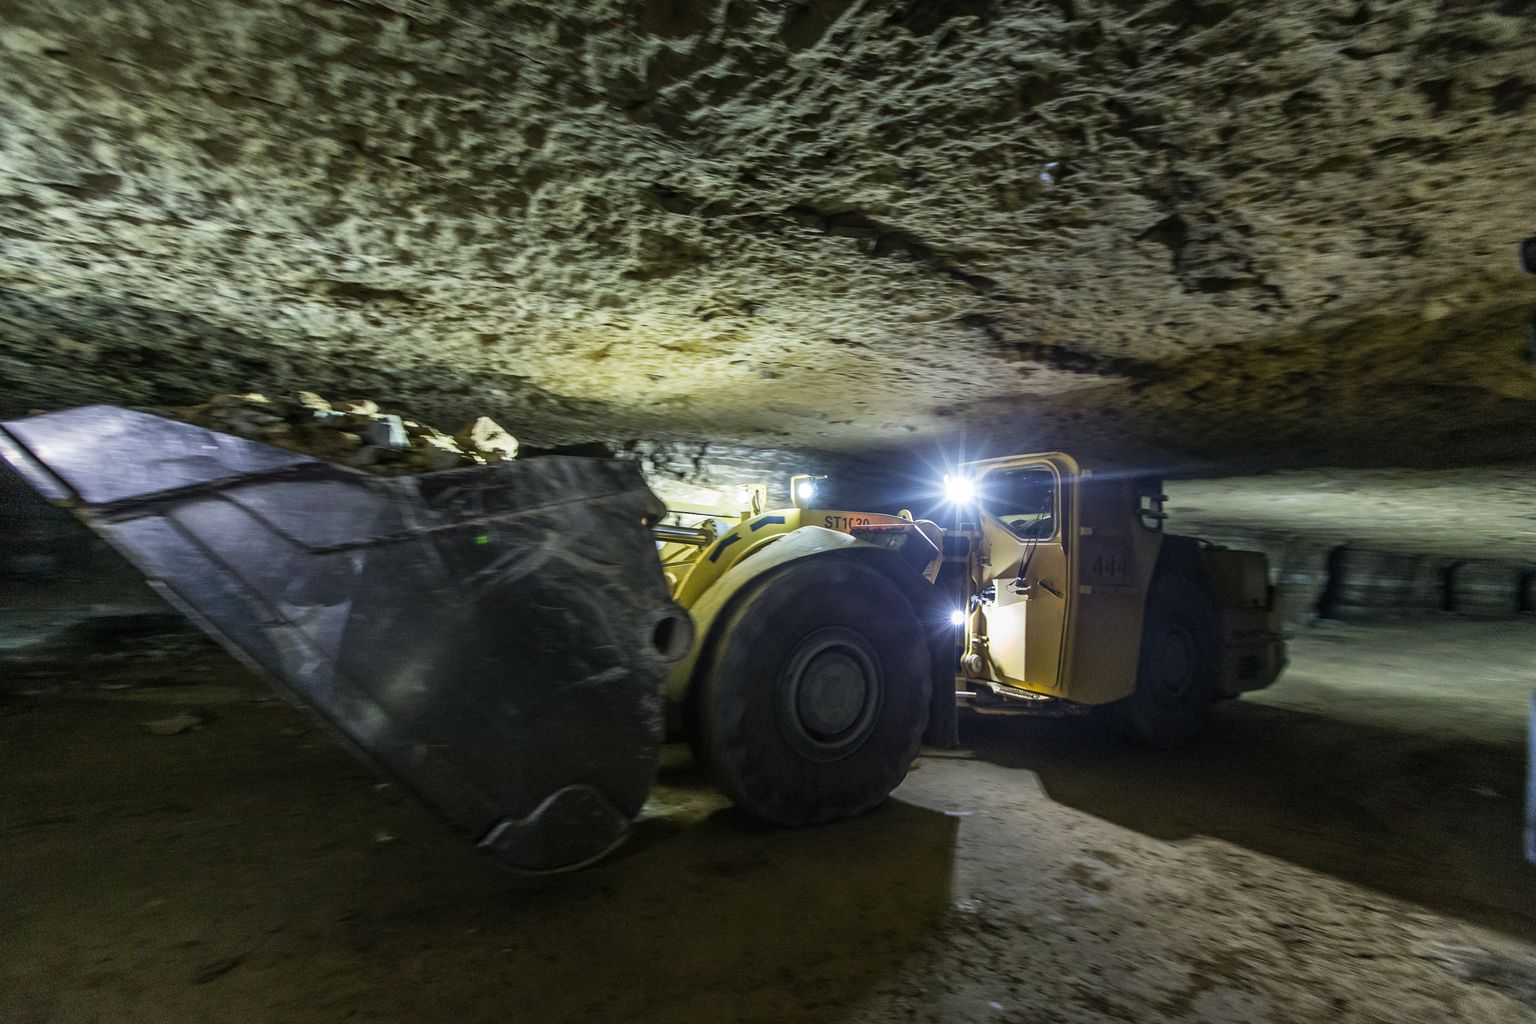 Estonia kaevanduse käigud ulatuvad kümnete kilomeetriteni. Mingil põhjusel on kaevanduse töötajad sinna peitnud tuhandete eurode eest varuosi, tööriistu jms, mida aga väidetavalt arvel ei ole.